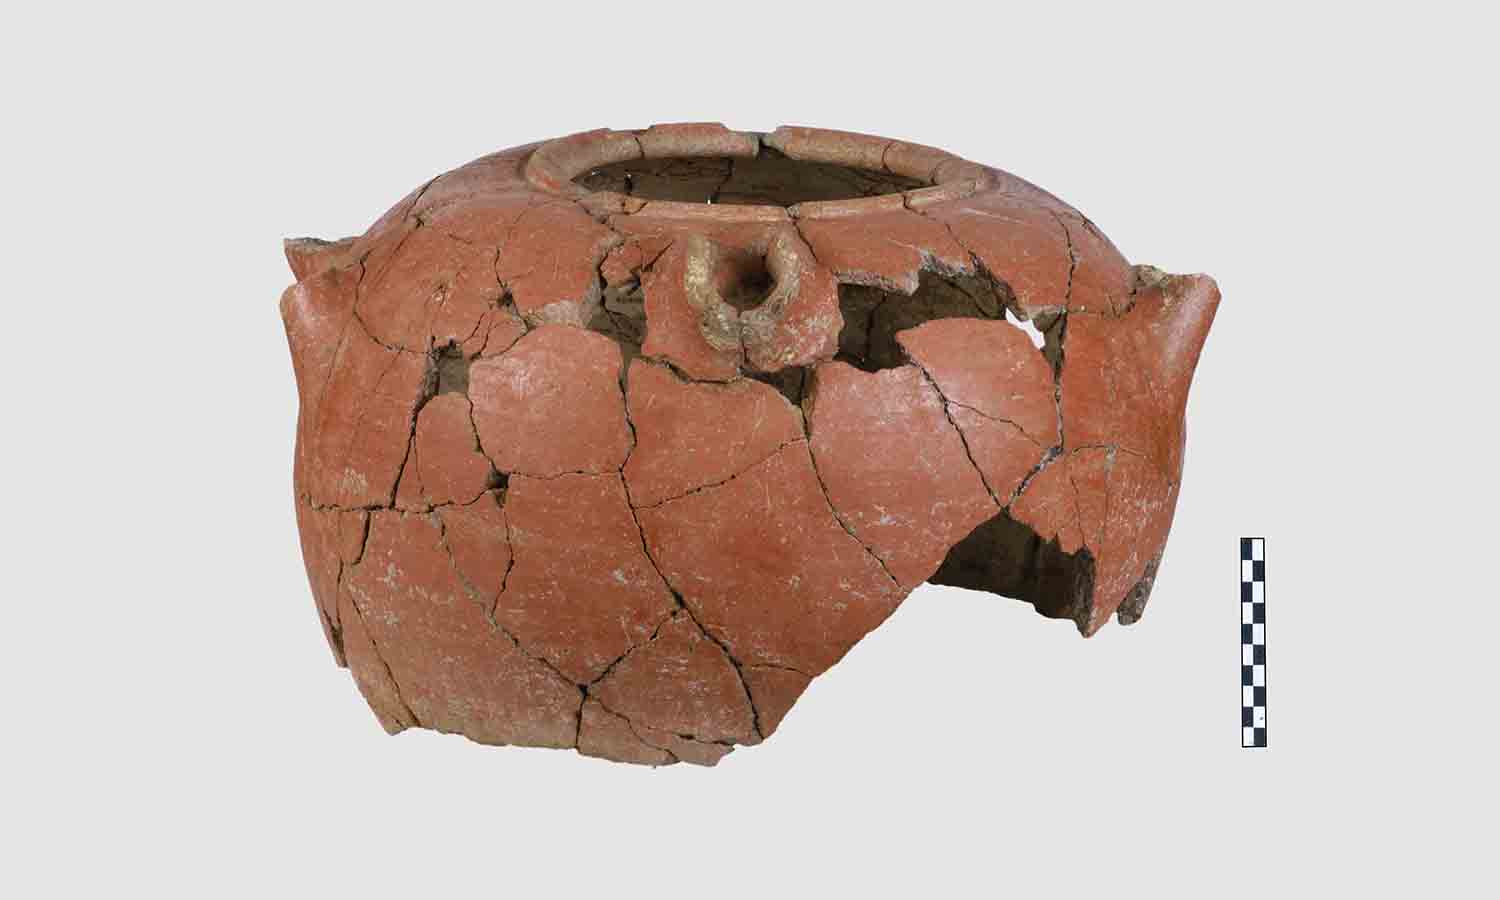 Πήλινο αγγείο. Μέση Εποχή Χαλκού (περίπου 1.600 π.Χ).